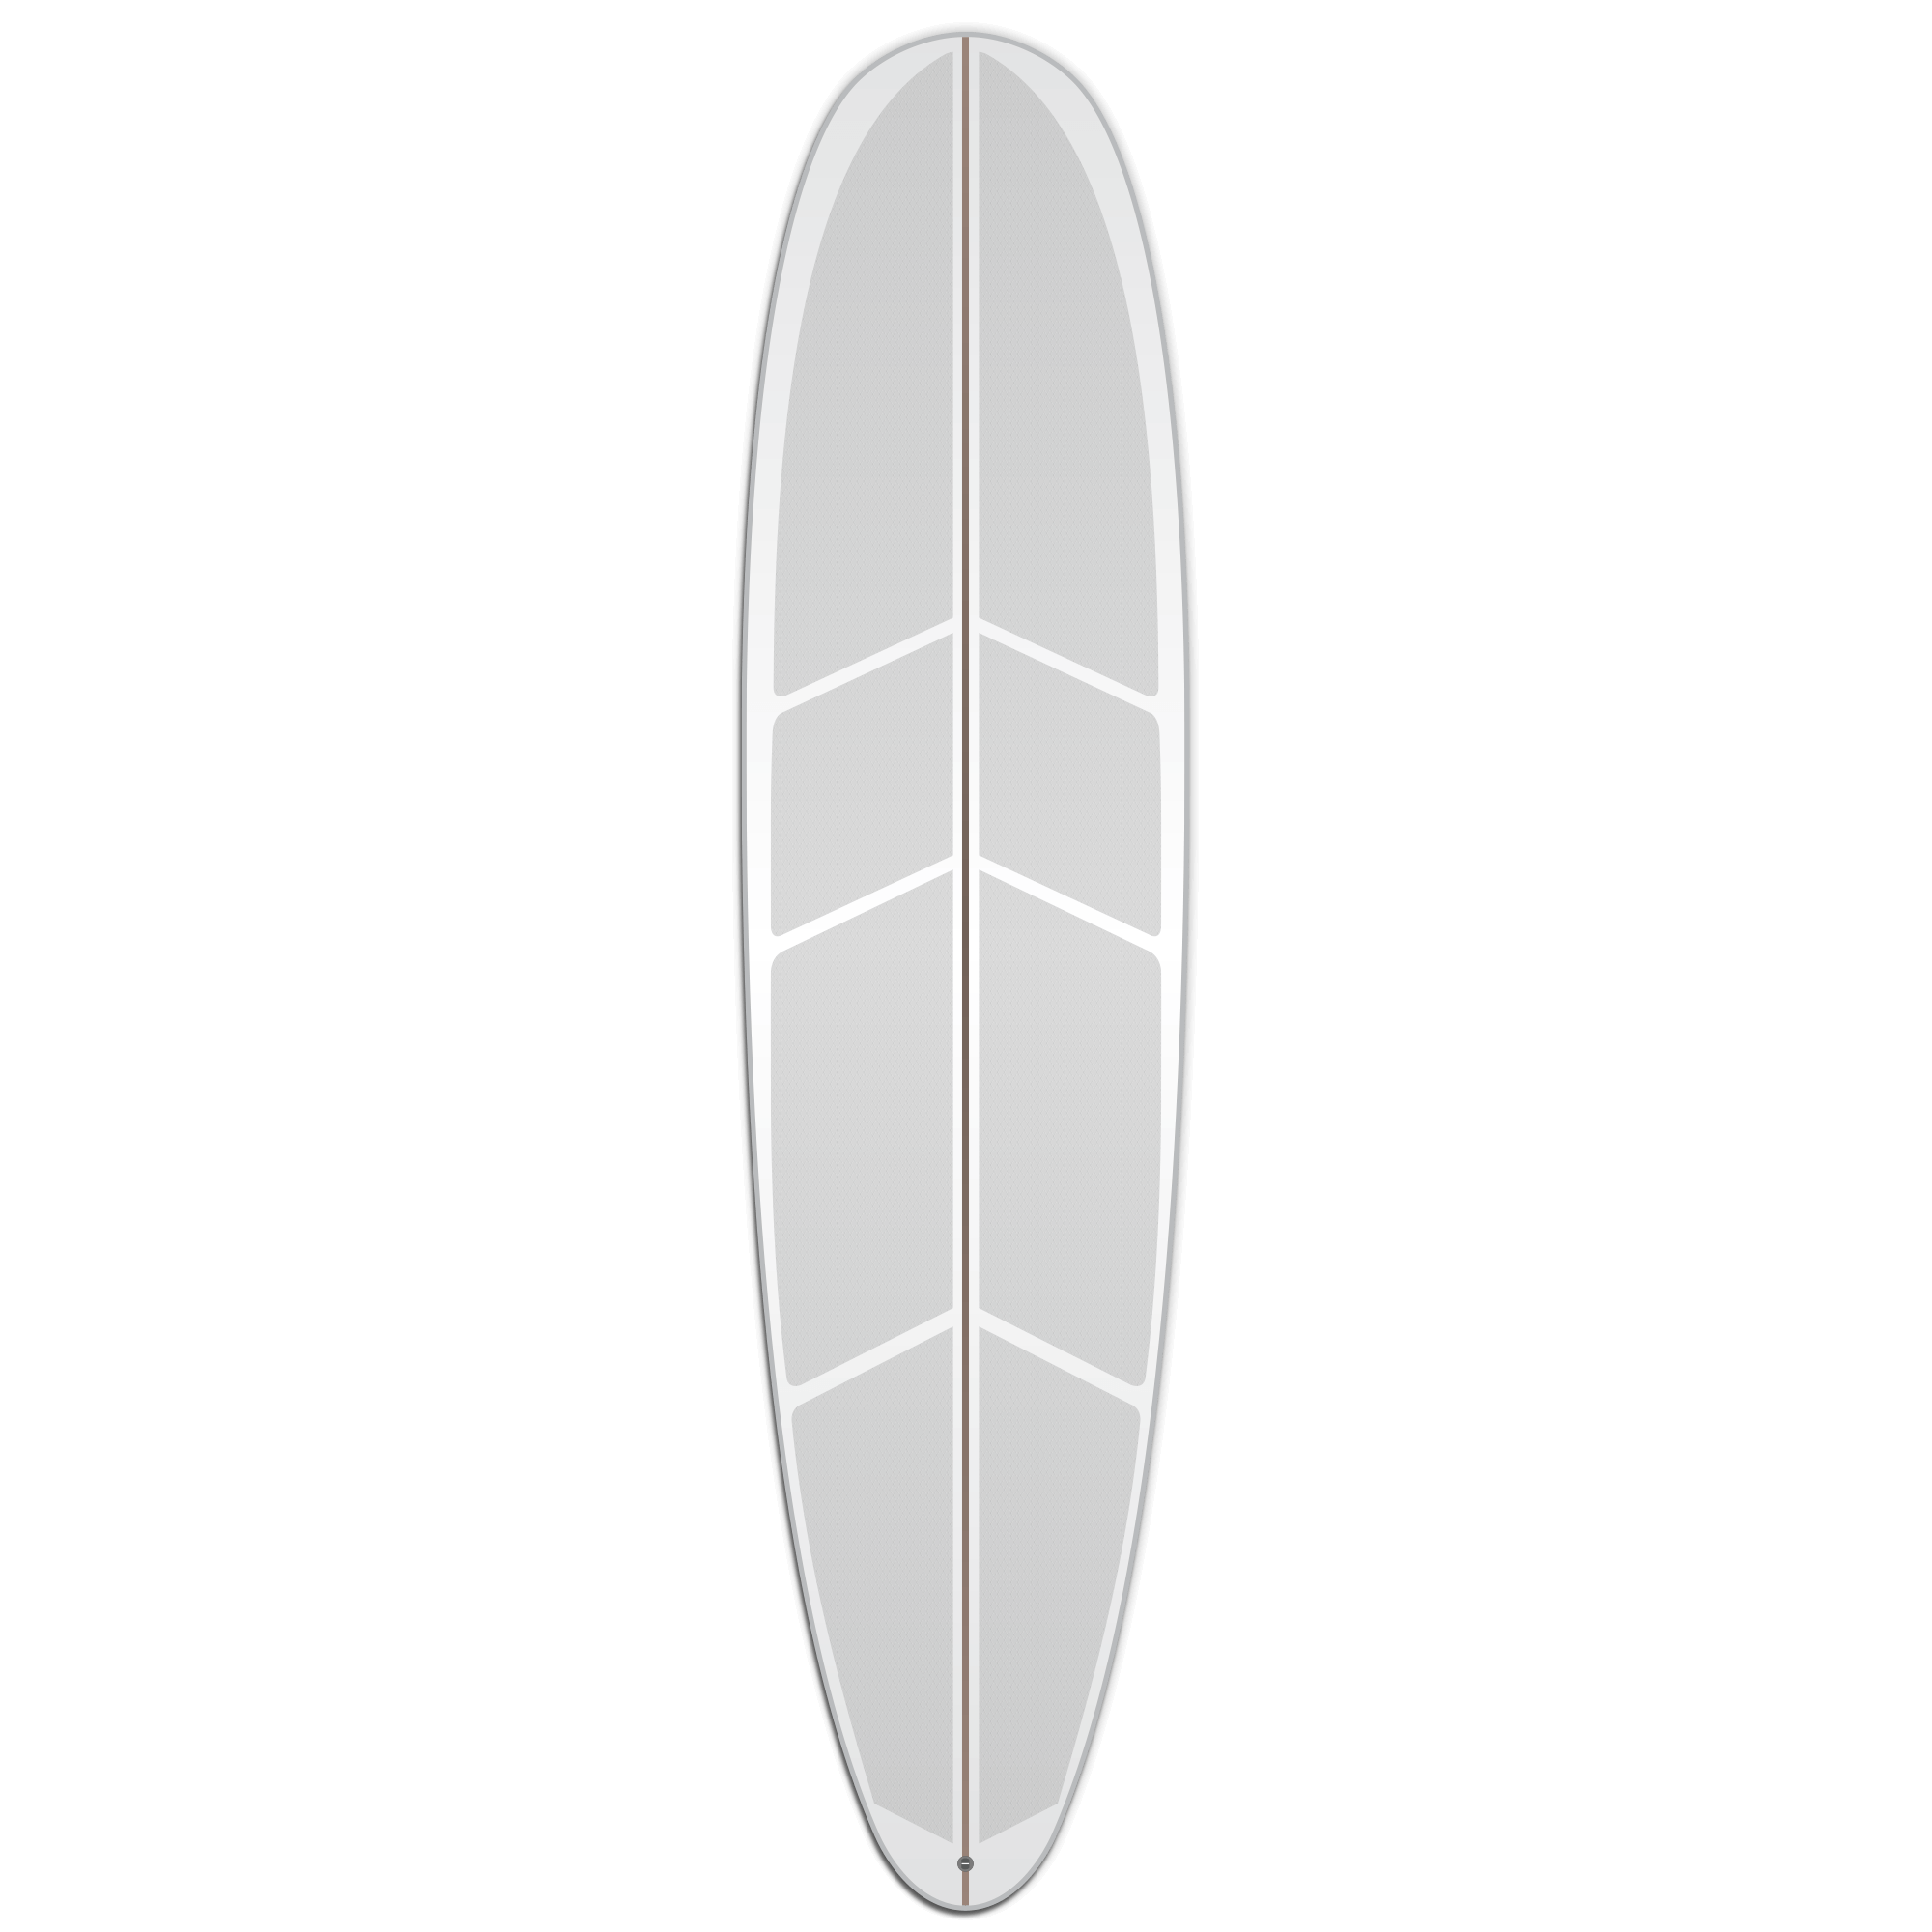 https://versatraction.com/wp-content/uploads/2022/10/versatraction-longboard-surfing-traction-kit.png